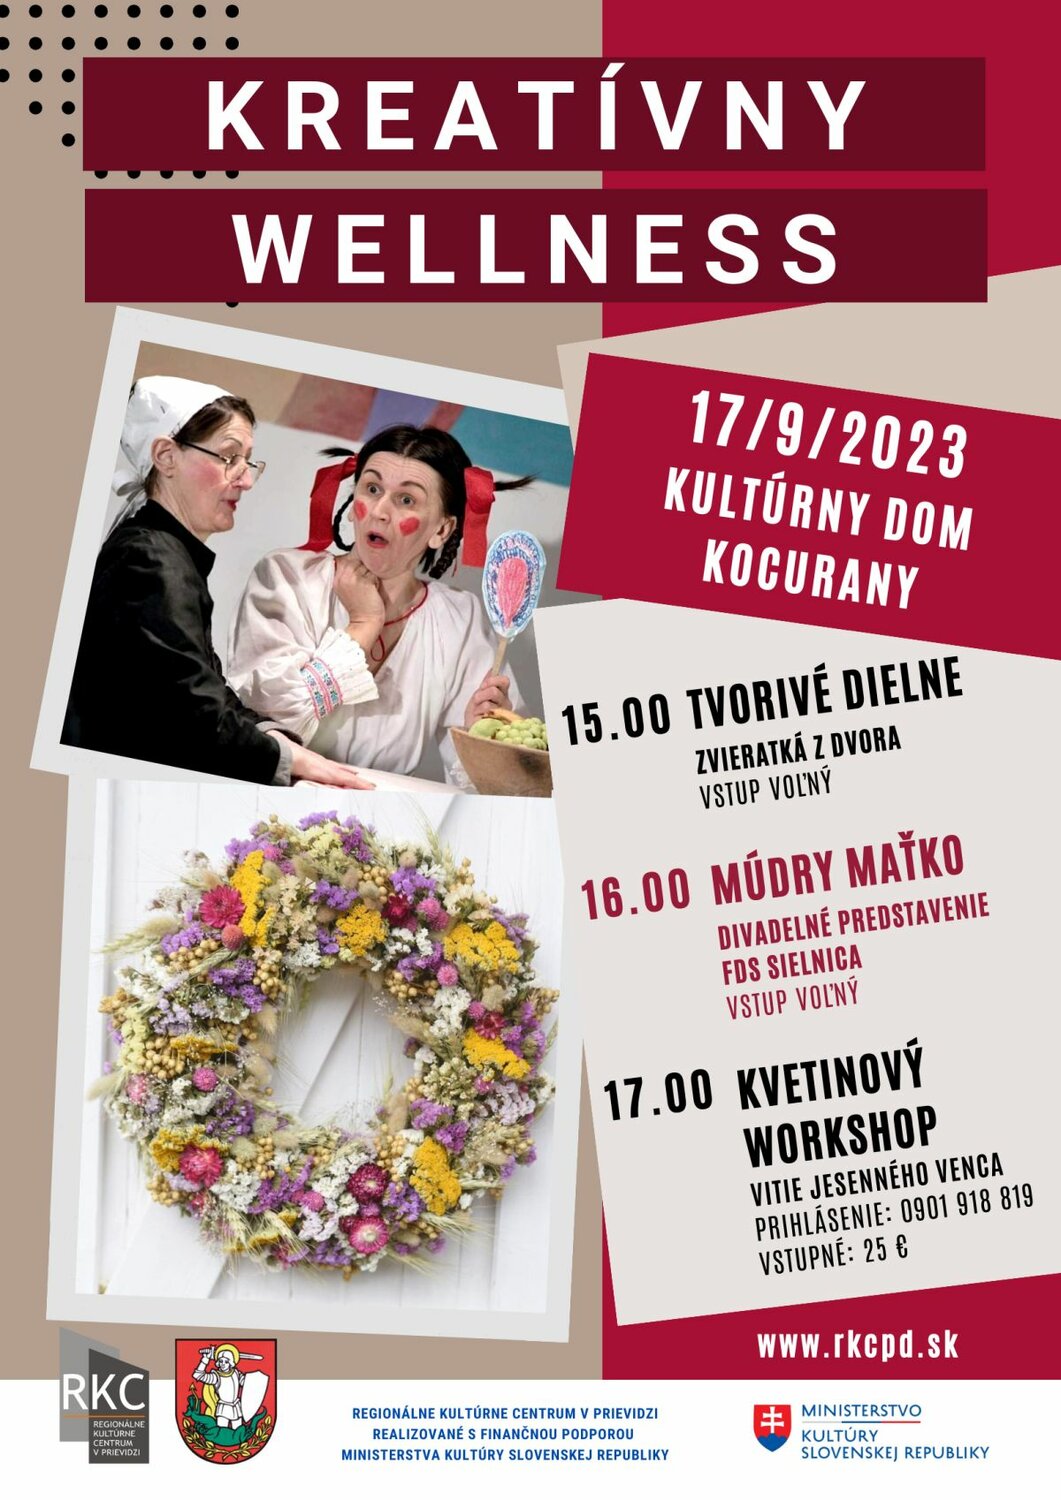 Kreatívny wellness 2023 Kocurany - plagát